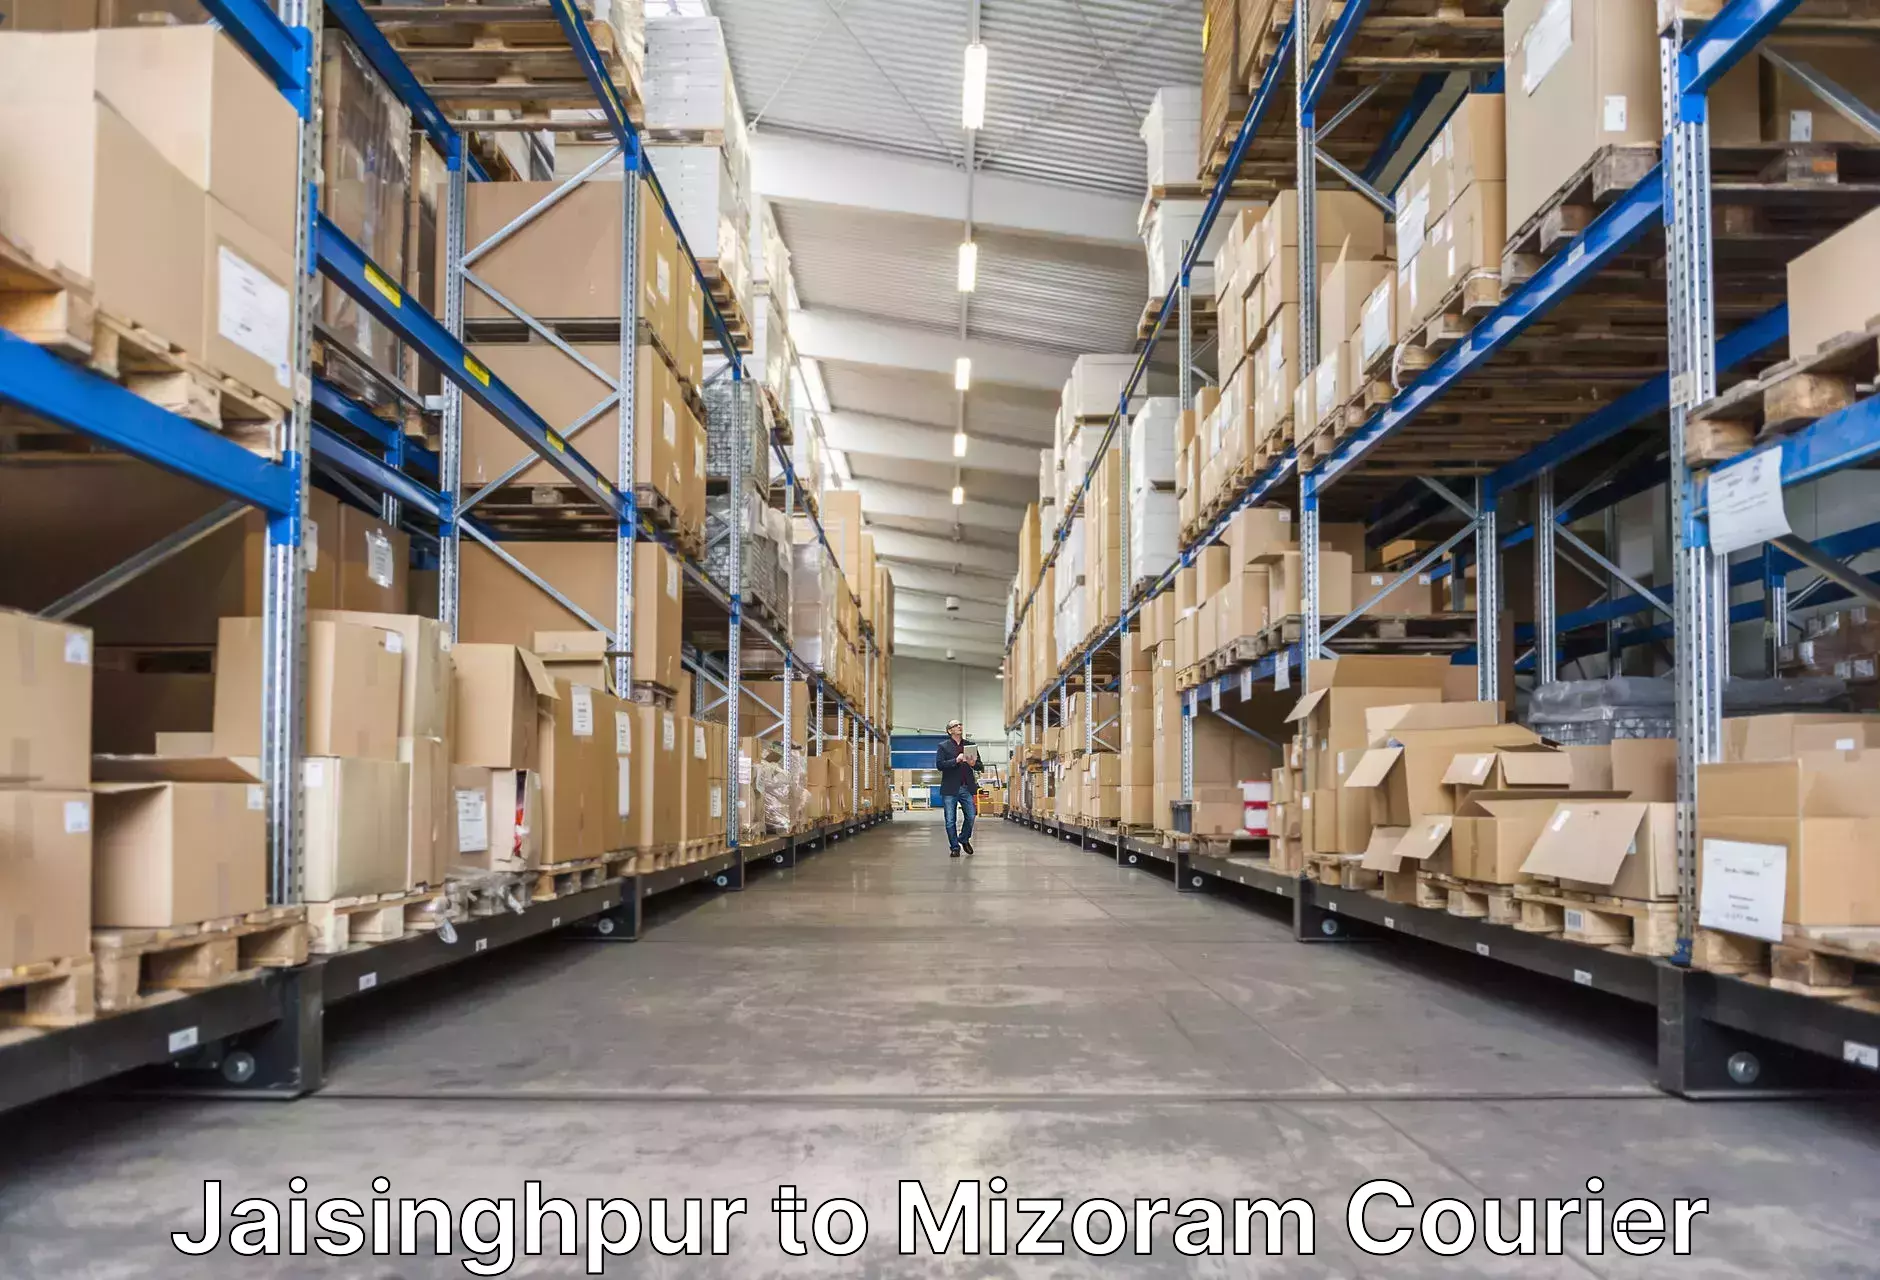 Luggage shipment specialists Jaisinghpur to Mizoram